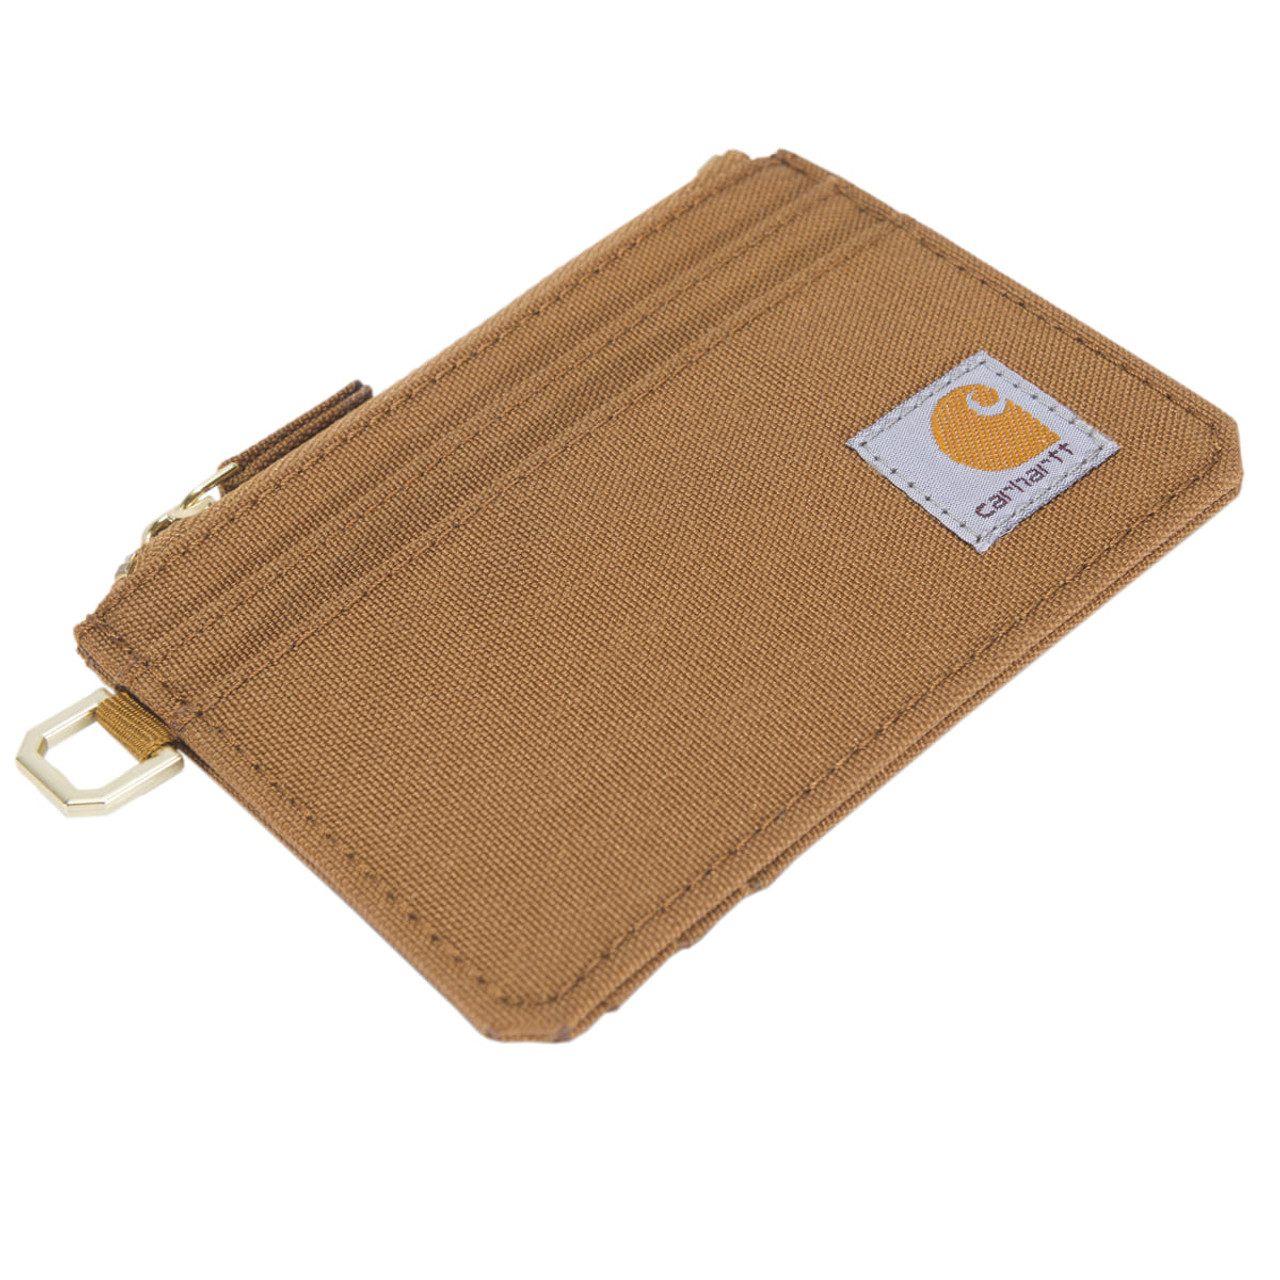 Carhartt Nylon Duck Zippered Card Keeper Wallet